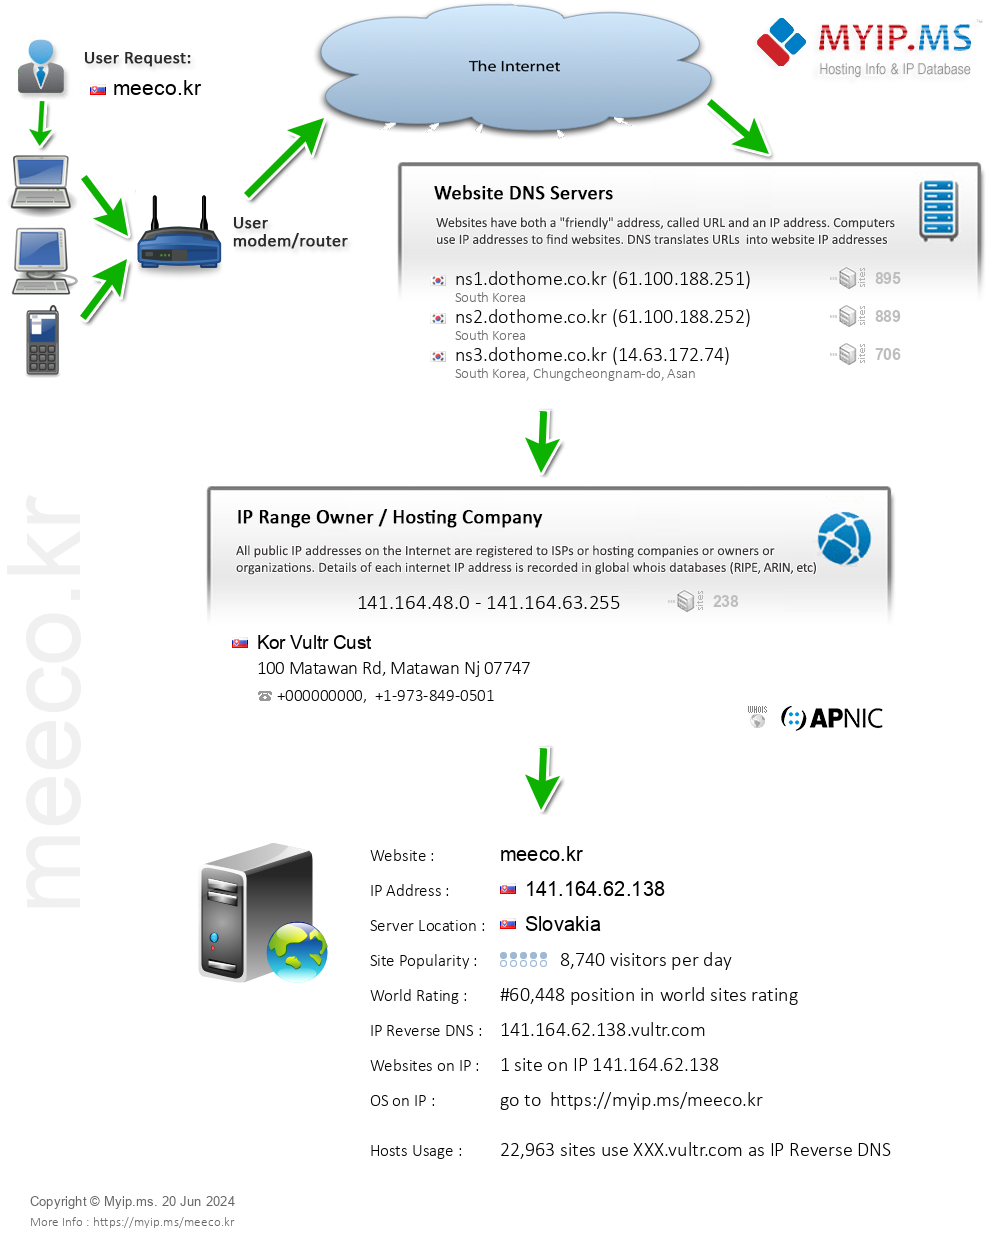 Meeco.kr - Website Hosting Visual IP Diagram